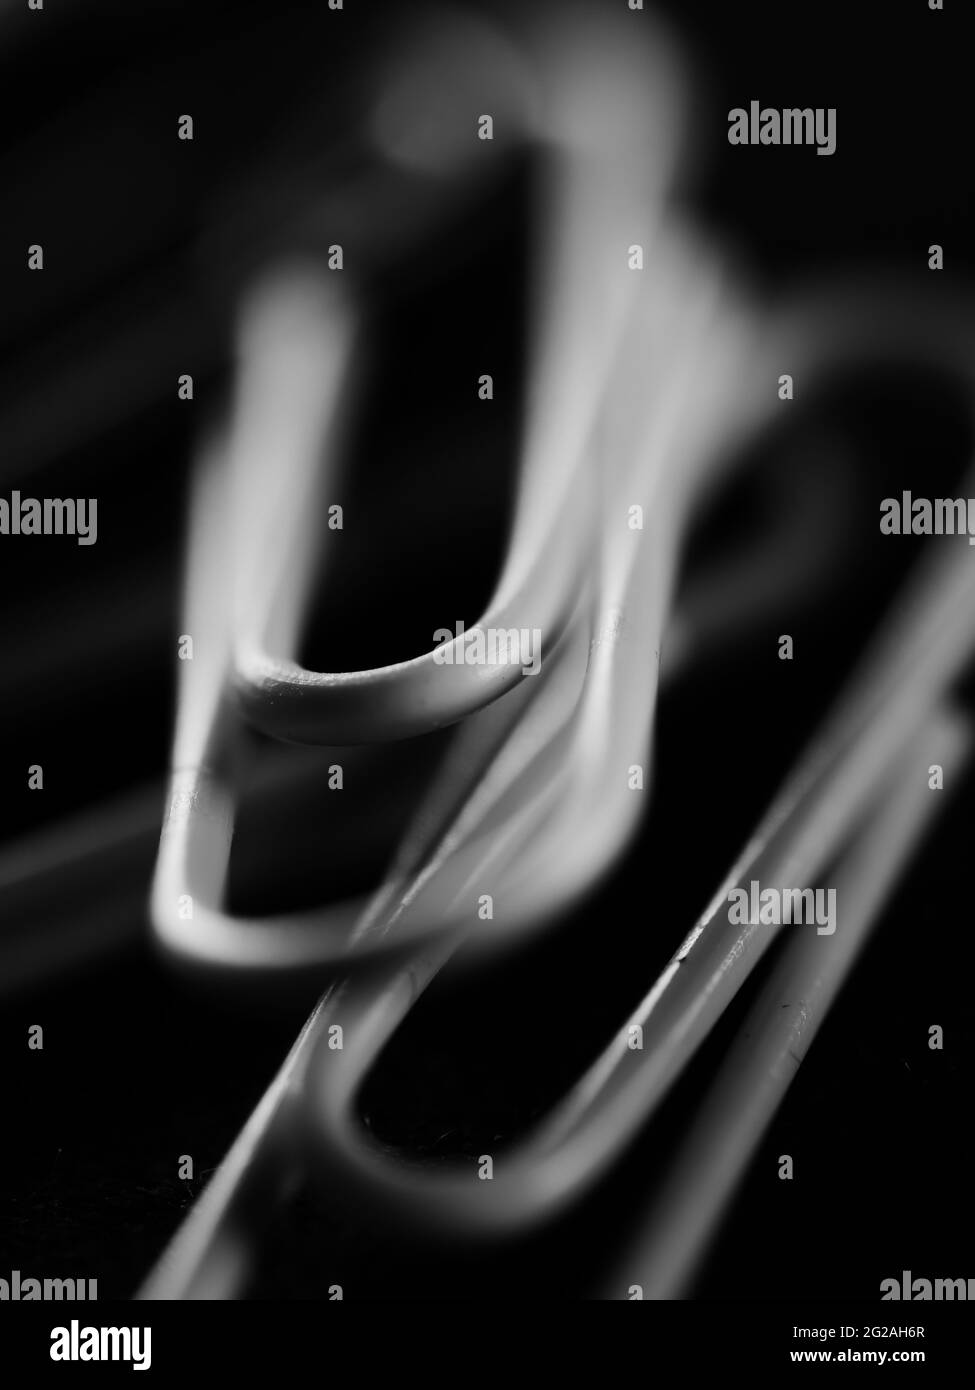 Vertikale Graustufenaufnahme von Büroklammern auf einem unscharfen schwarzen Hintergrund Stockfoto